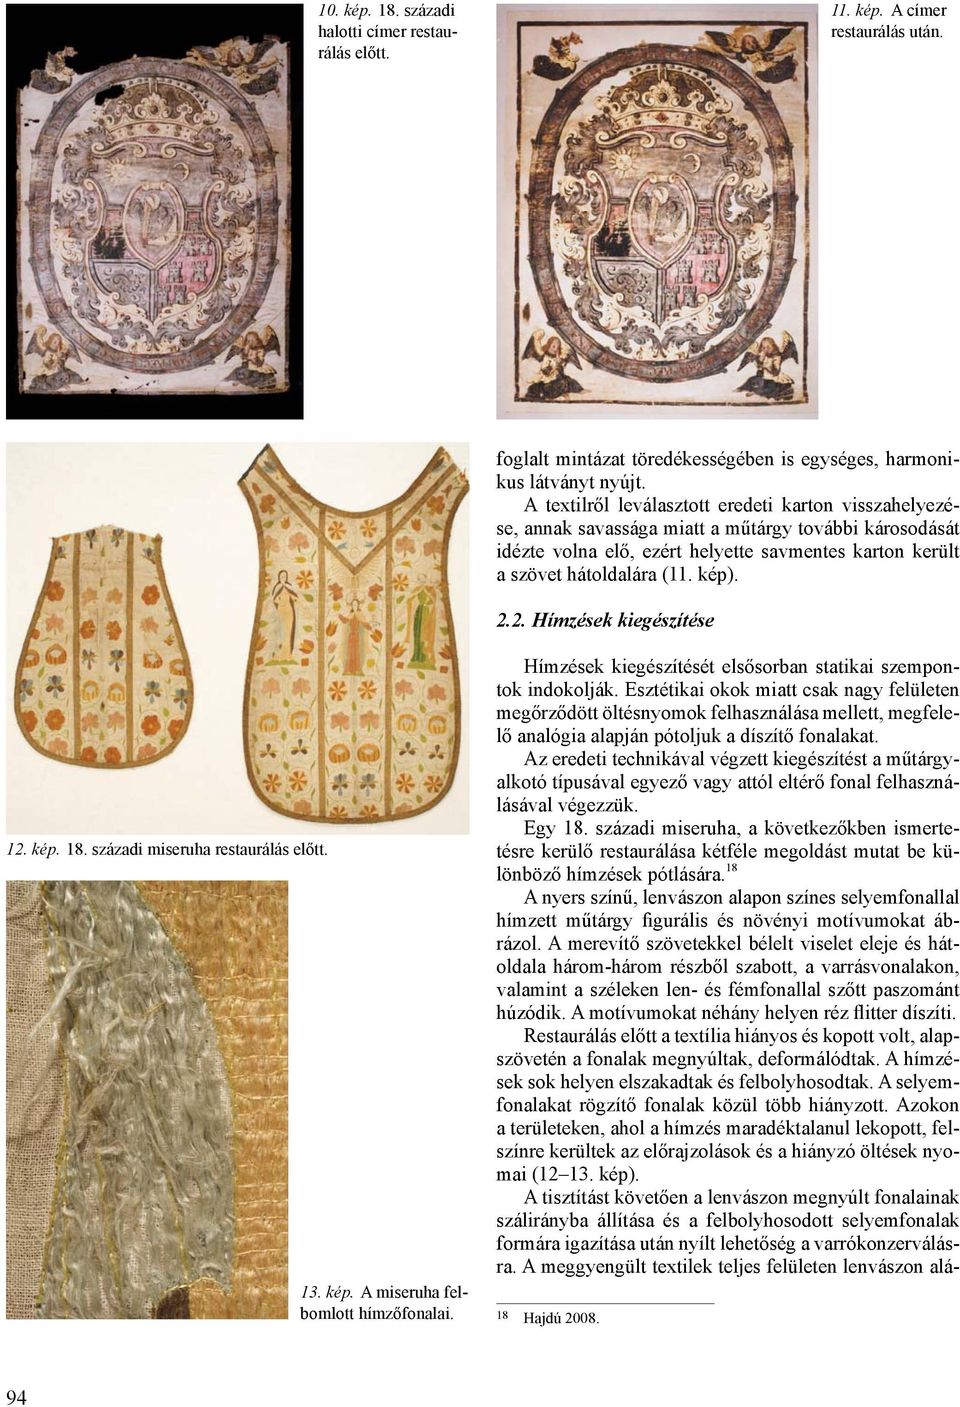 2. Hímzések kiegészítése 12. kép. 18. századi miseruha restaurálás előtt. 13. kép. A miseruha felbomlott hímzőfonalai. Hímzések kiegészítését elsősorban statikai szempontok indokolják.